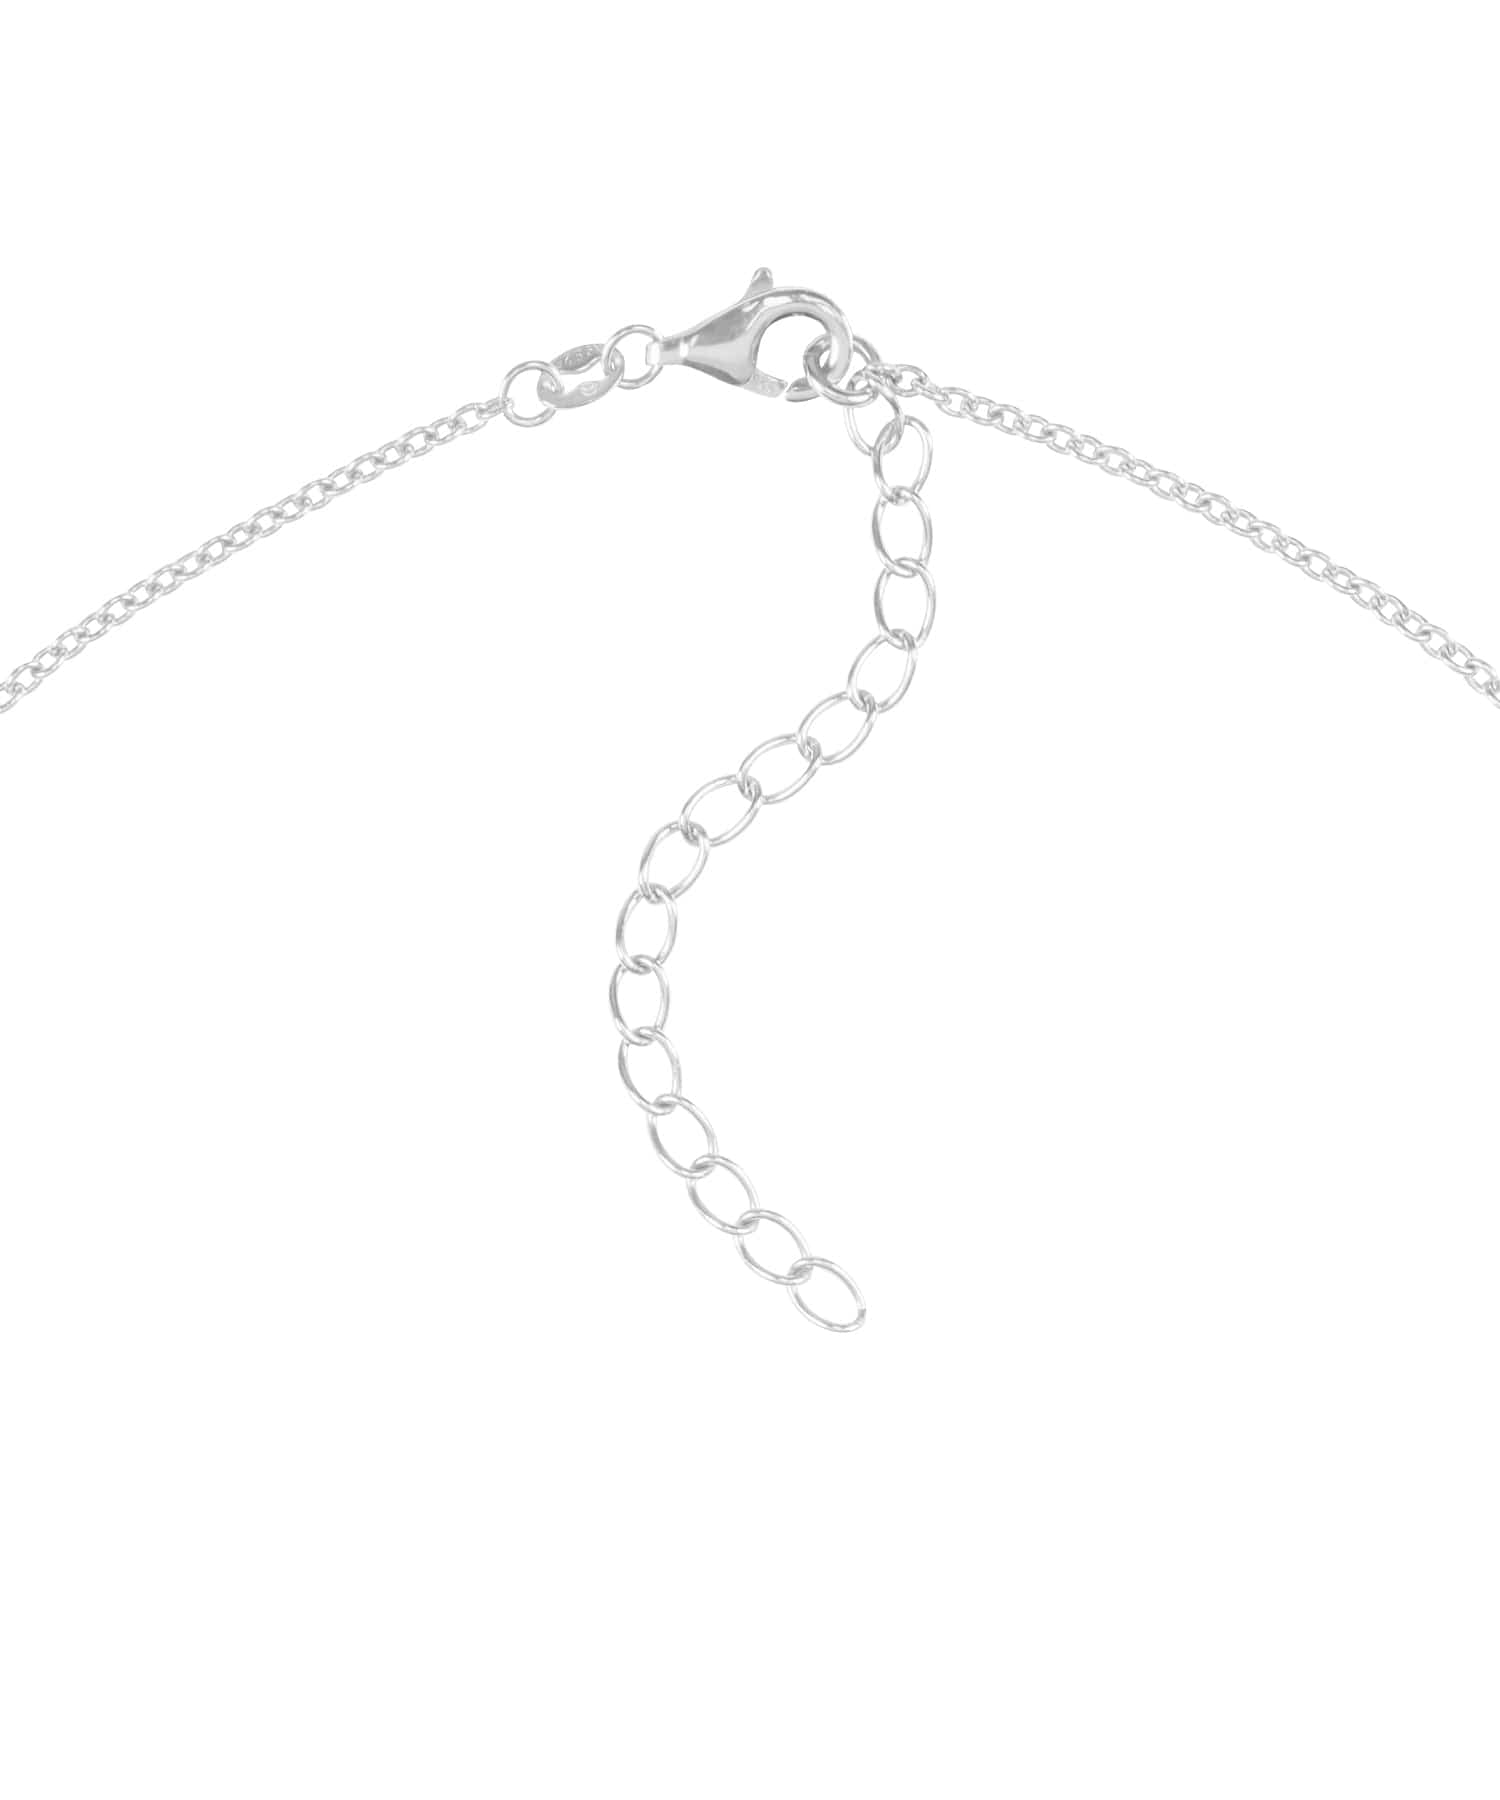 BERGMENSCH® Bergverliebt Halskette 925 Sterling Silber